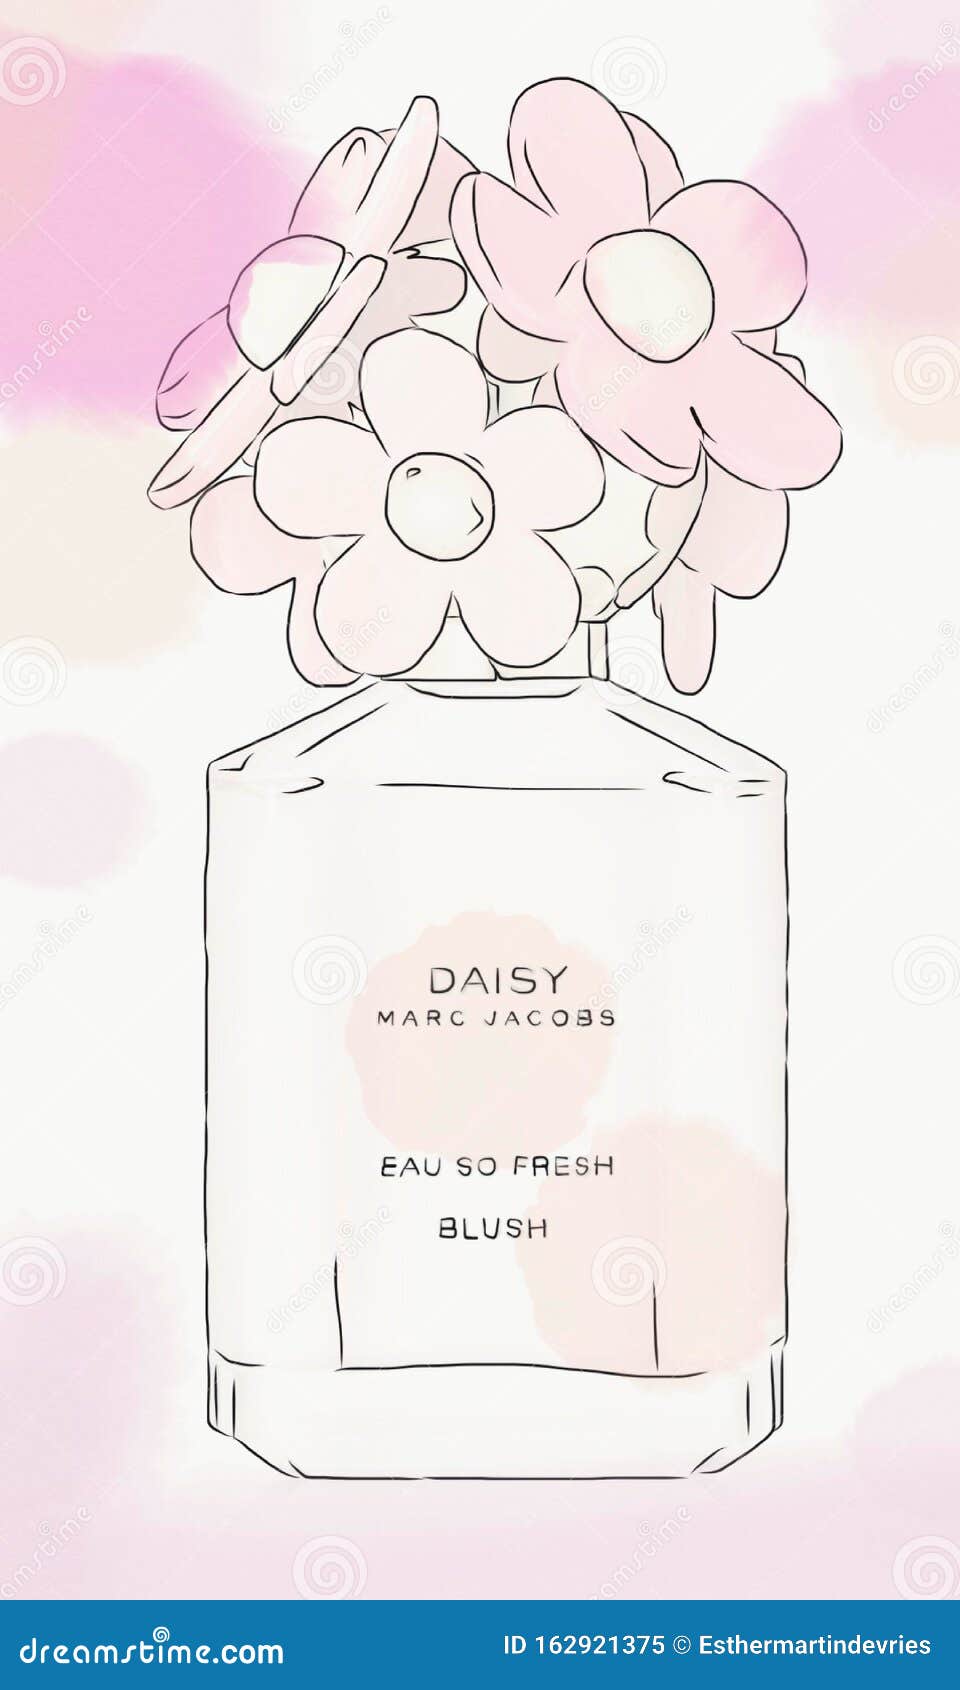 marc jacobs daisy perfume